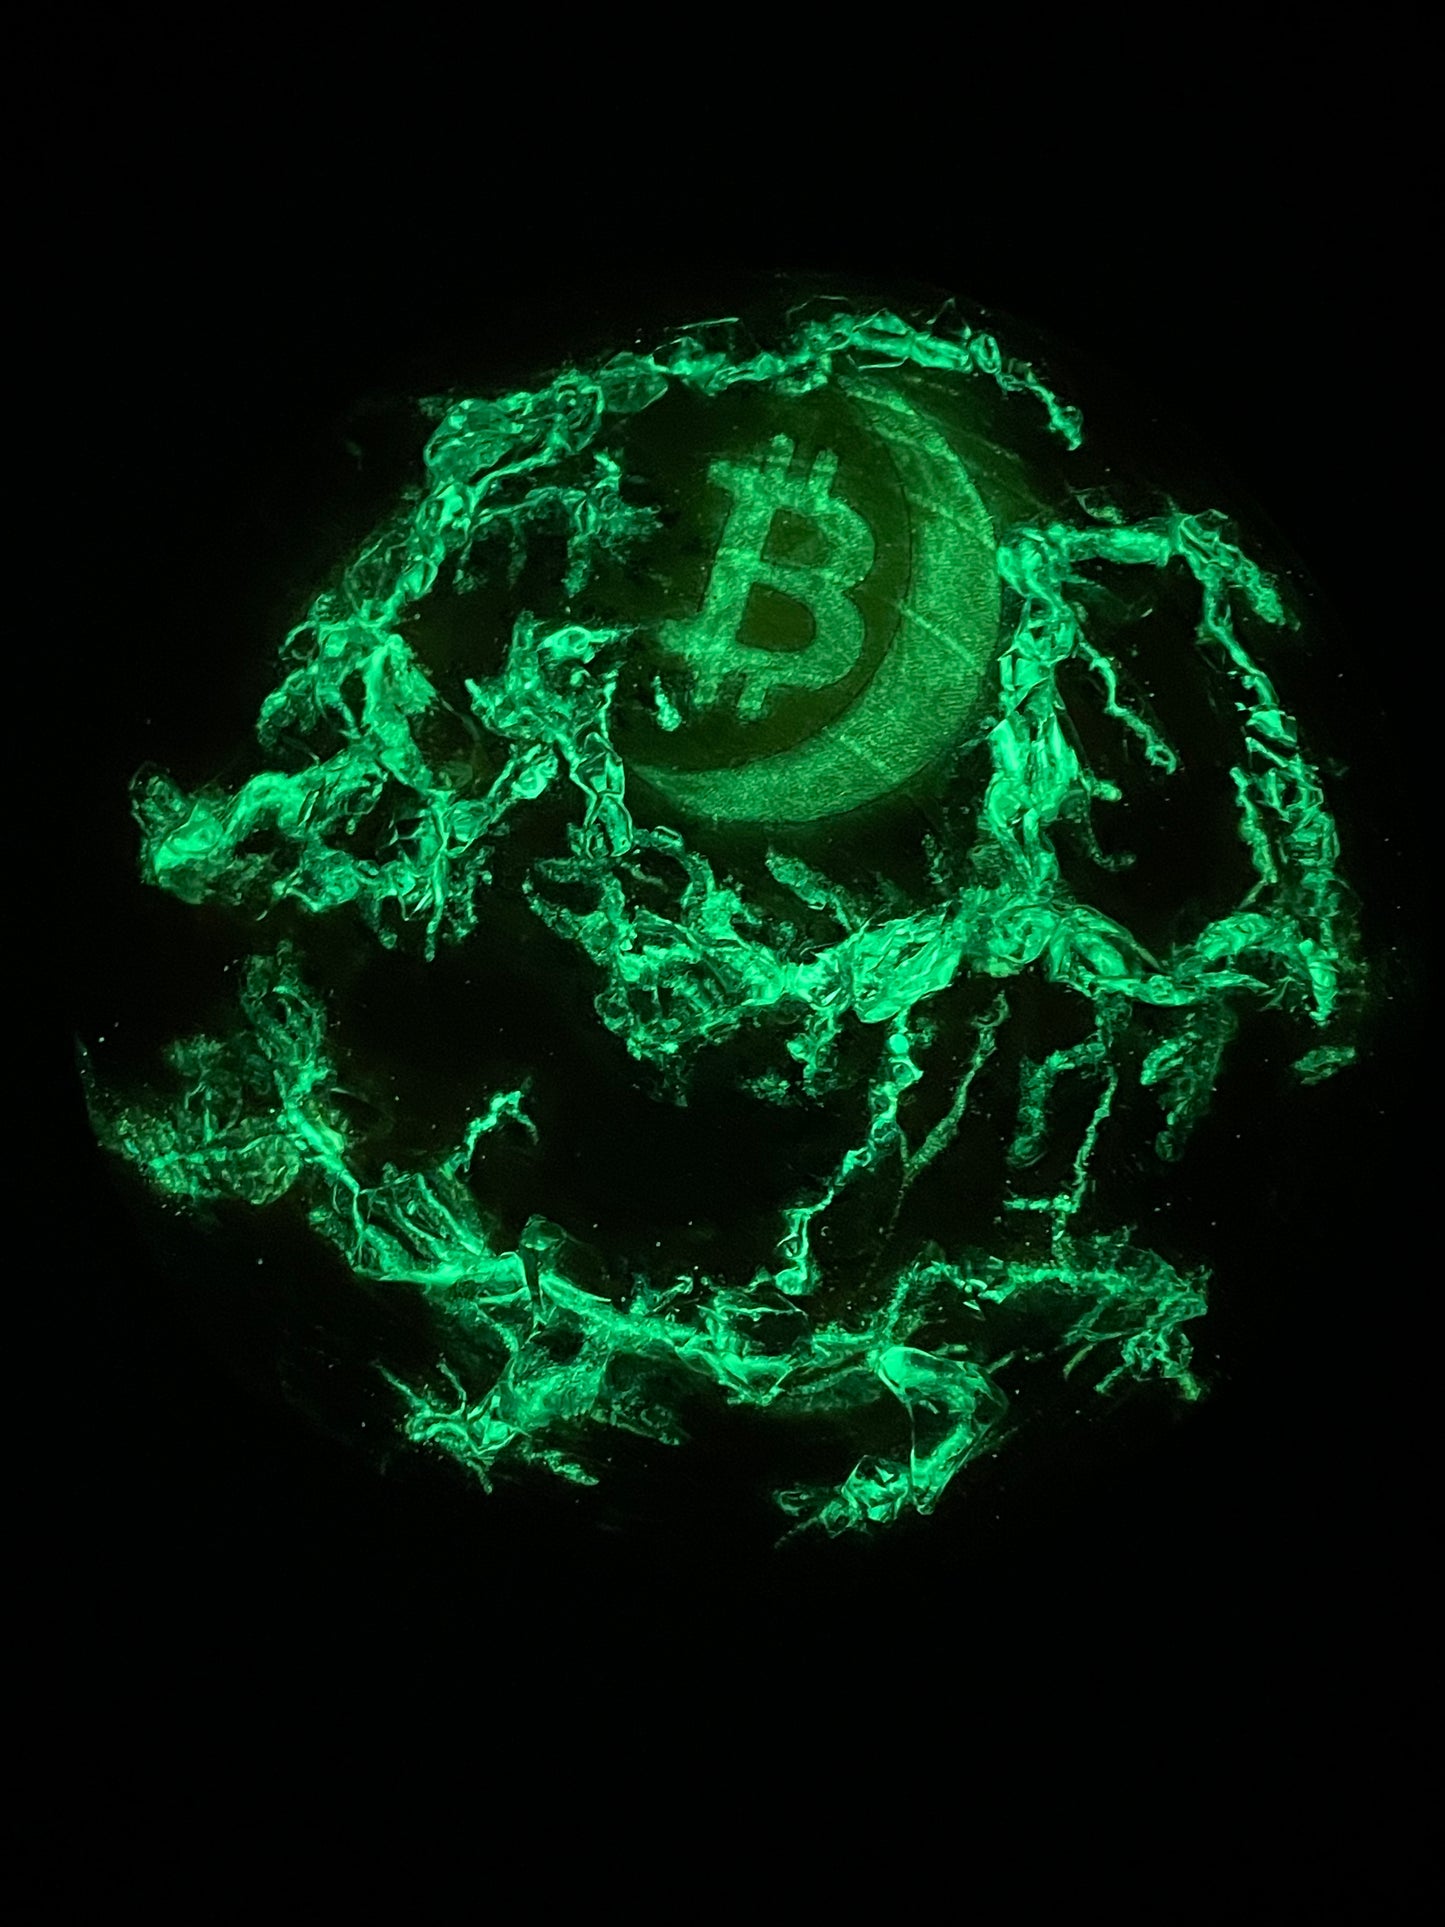 “Bitcoin on the Moon” series